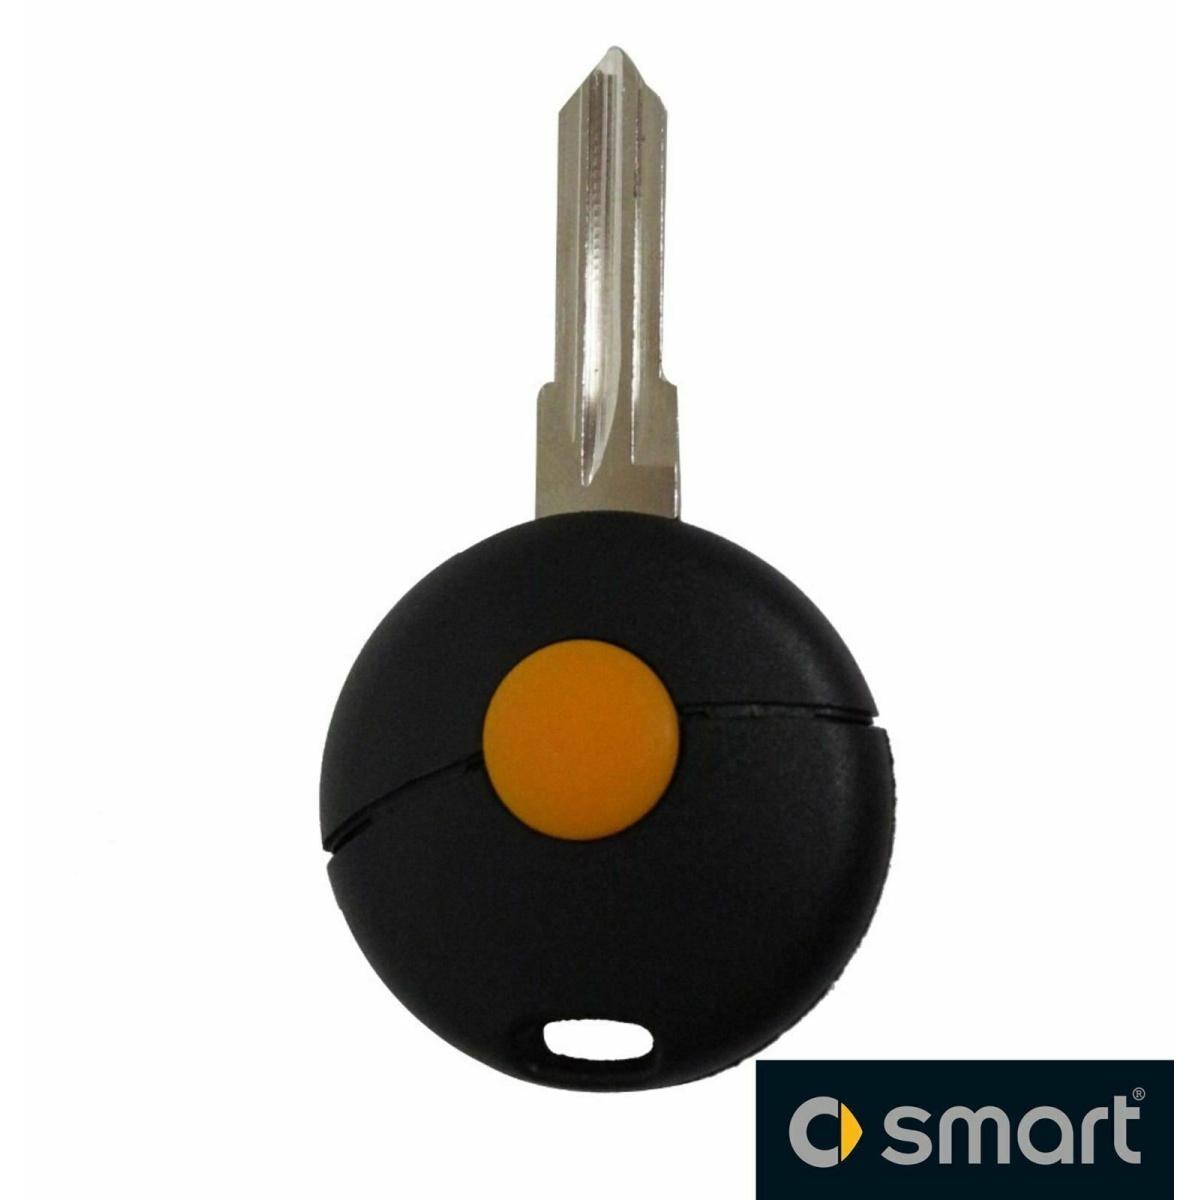 Smart chiave guscio telecomando 1 tasto chiavi auto smart fortwo smart01